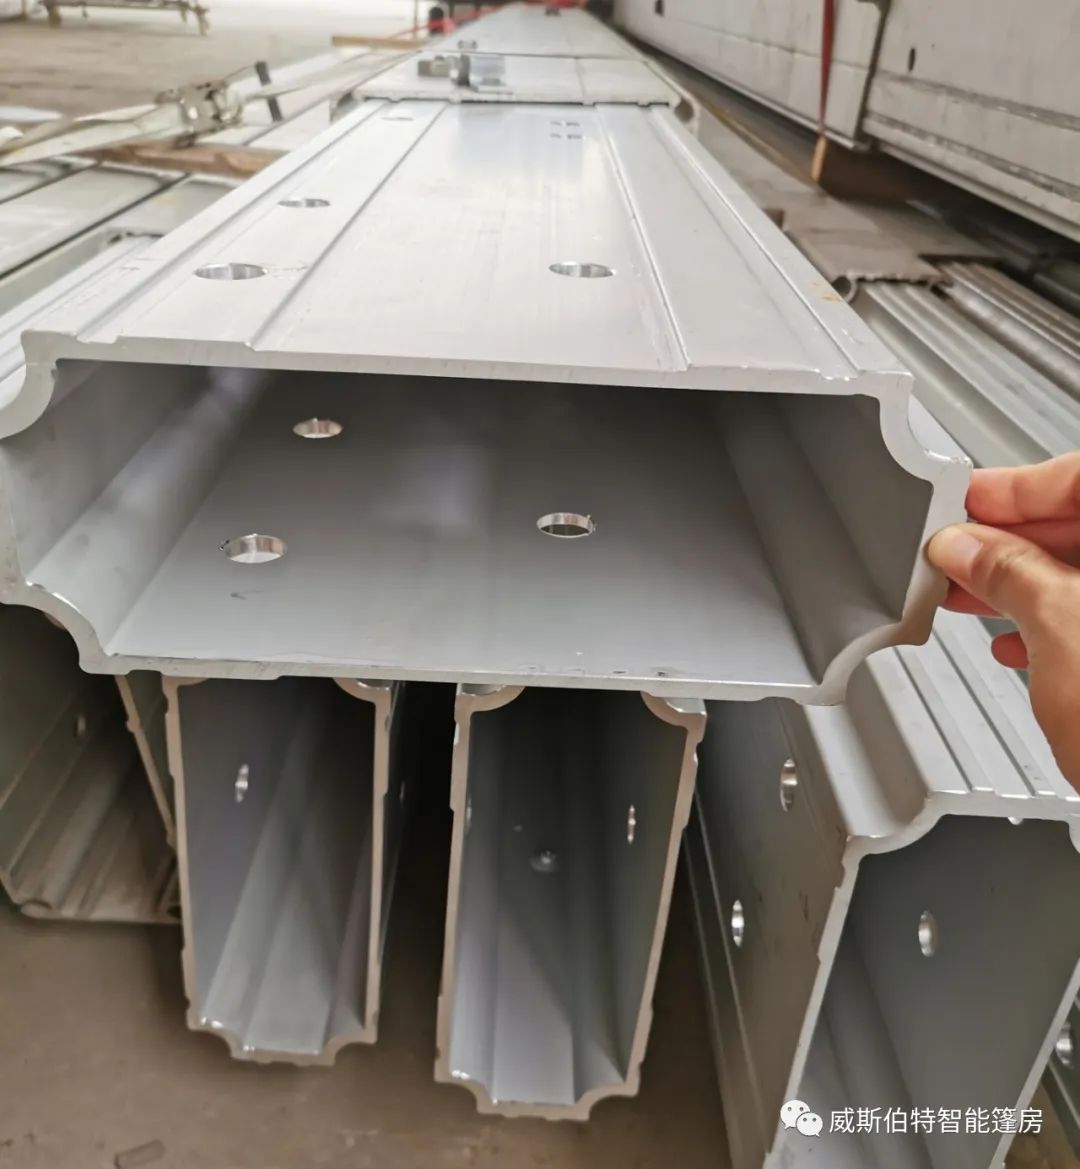 一篇文章讲清楚模块化装配式铝合金篷房建筑为什么使用6系铝合金作为主型材